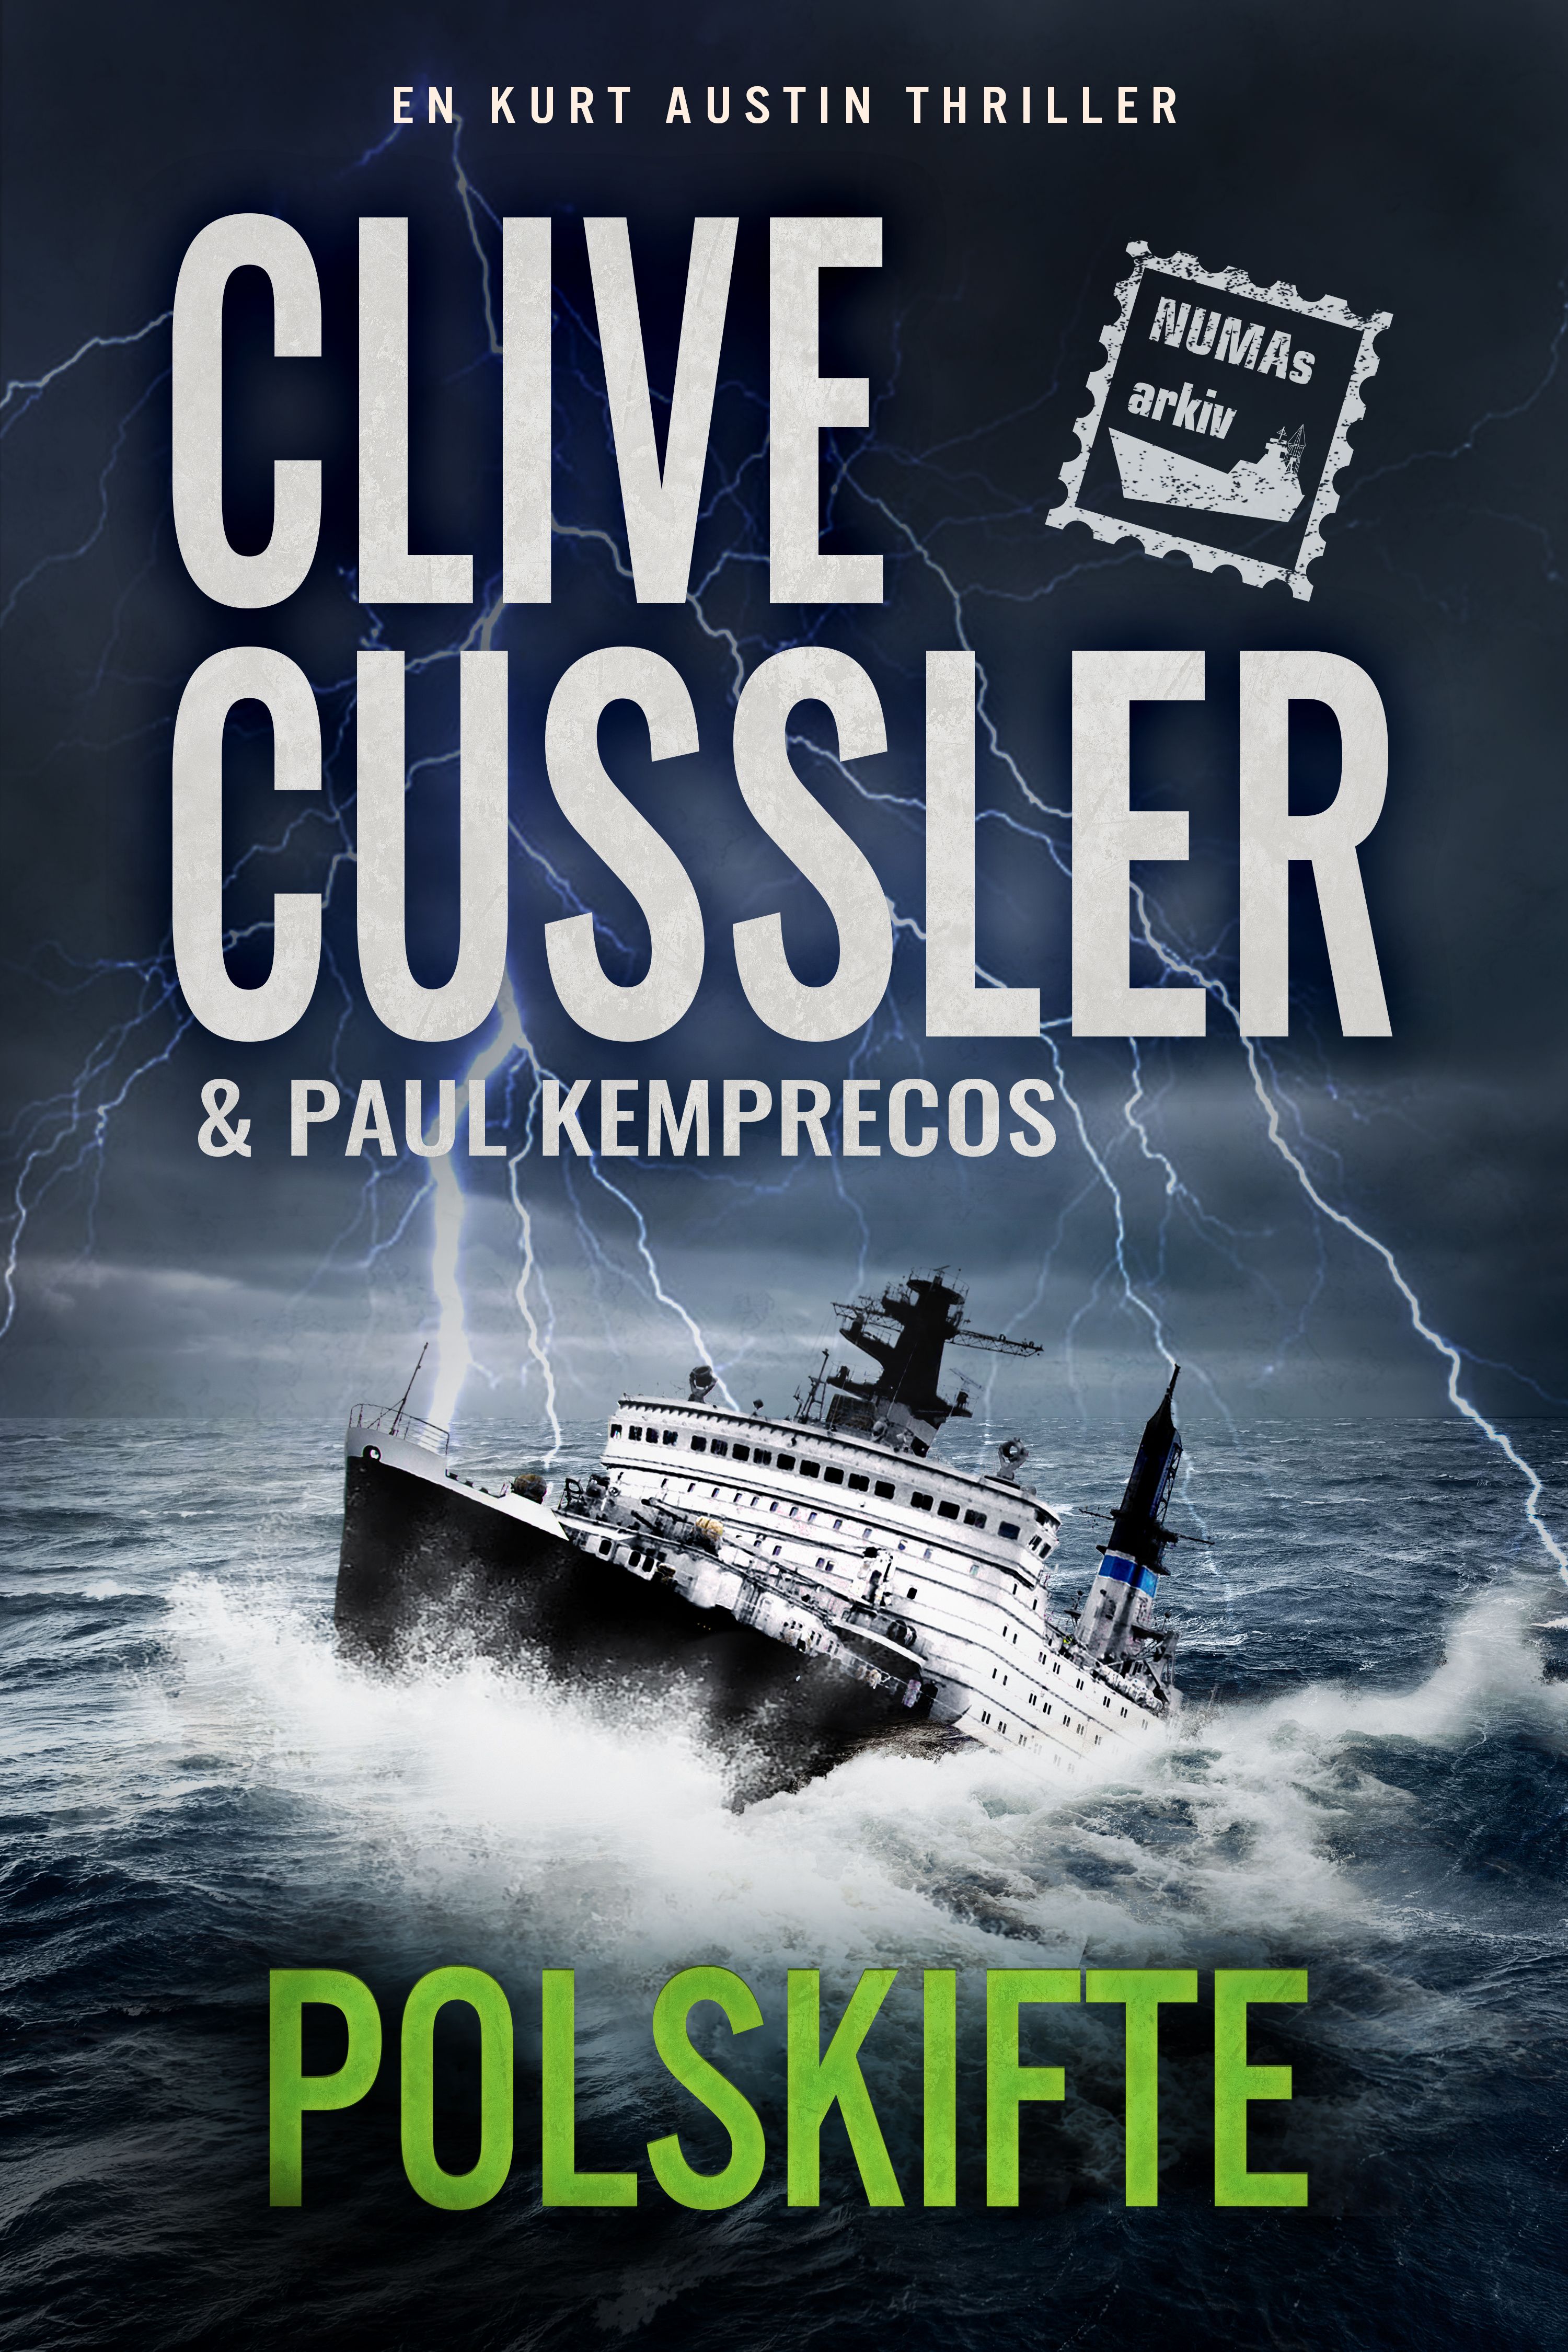 Polskifte, e-bok av Clive Cussler